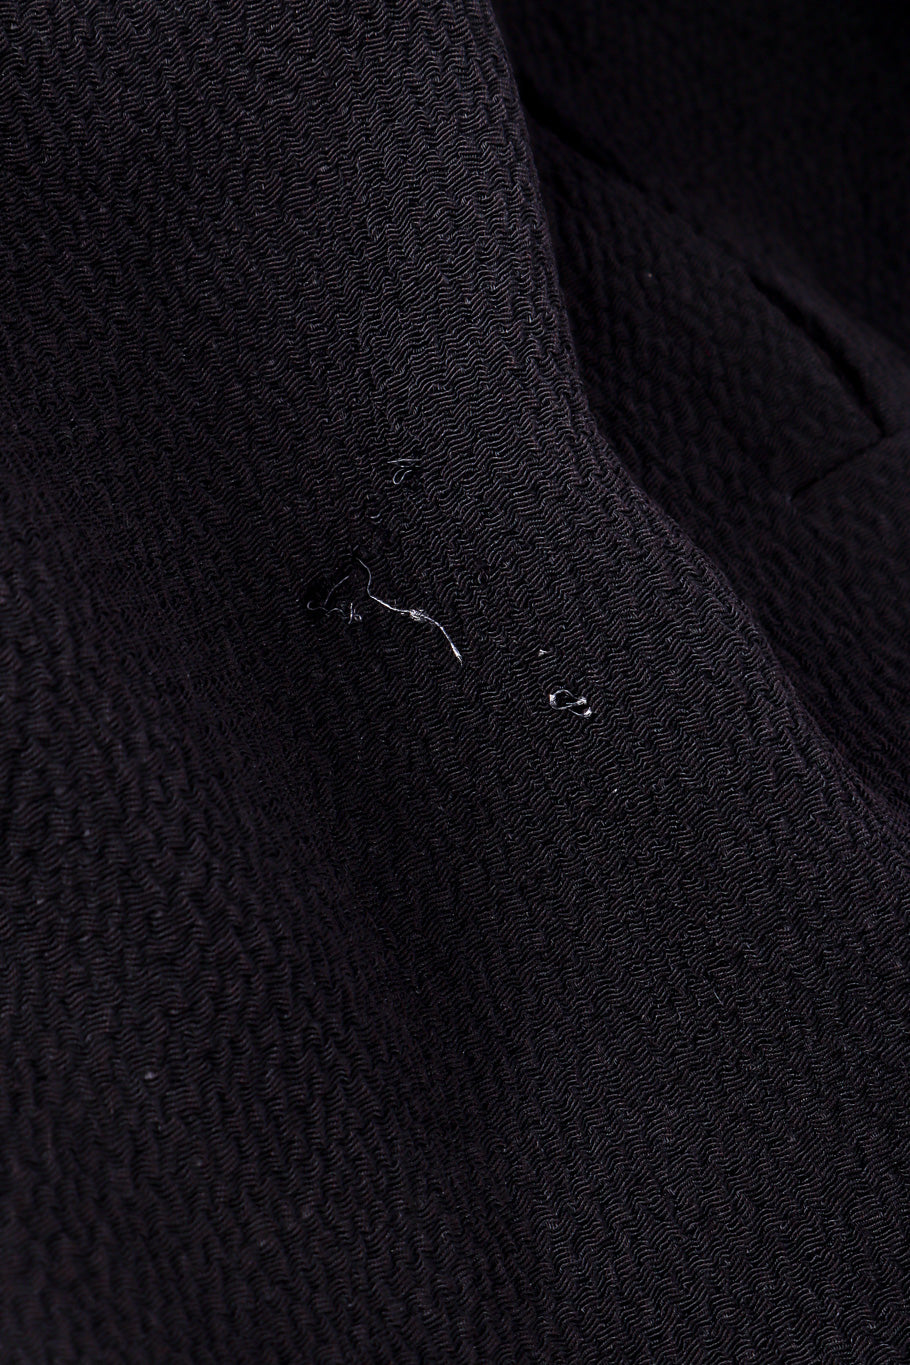 Wrap trouser by Yves Saint Laurent snag close @recessla